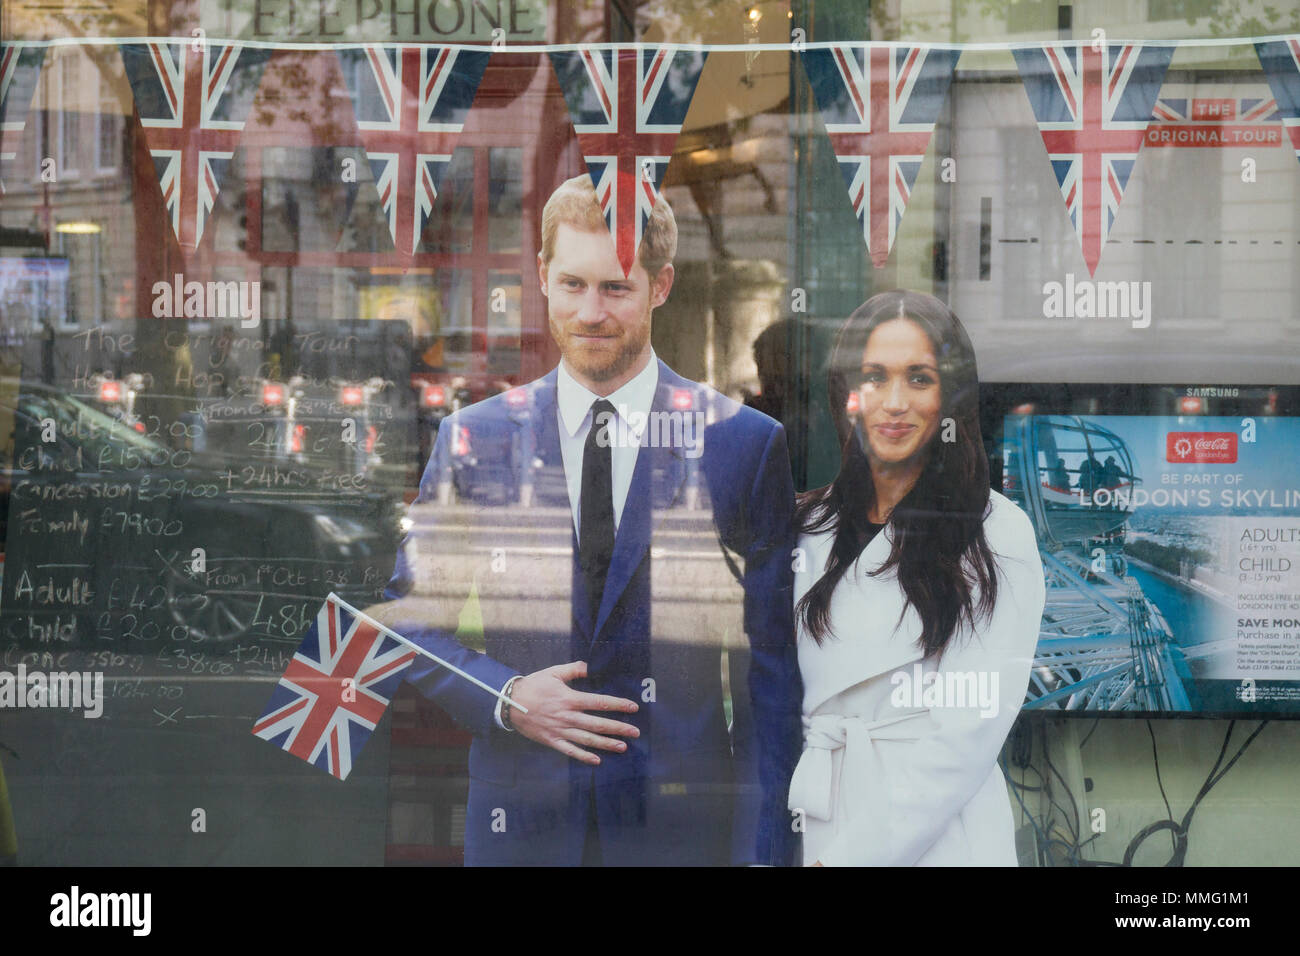 Londres, Royaume-Uni - 11 MAI 2018 : célébration de la présentation en magasin mariage du prince Harry et Meghan markle. Banque D'Images